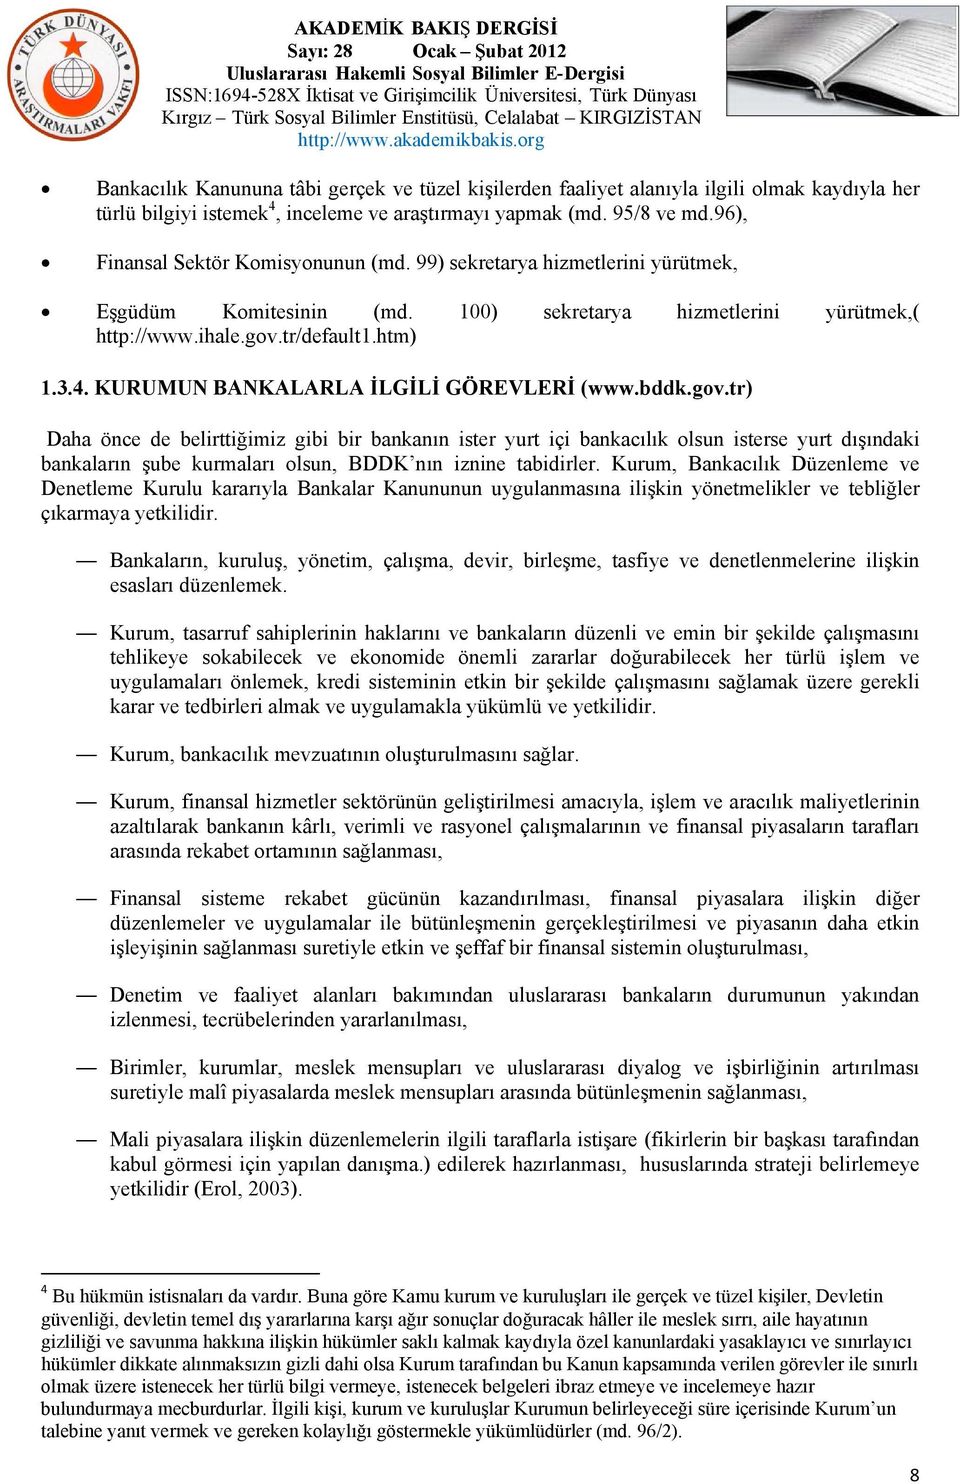 KURUMUN BANKALARLA İLGİLİ GÖREVLERİ (www.bddk.gov.